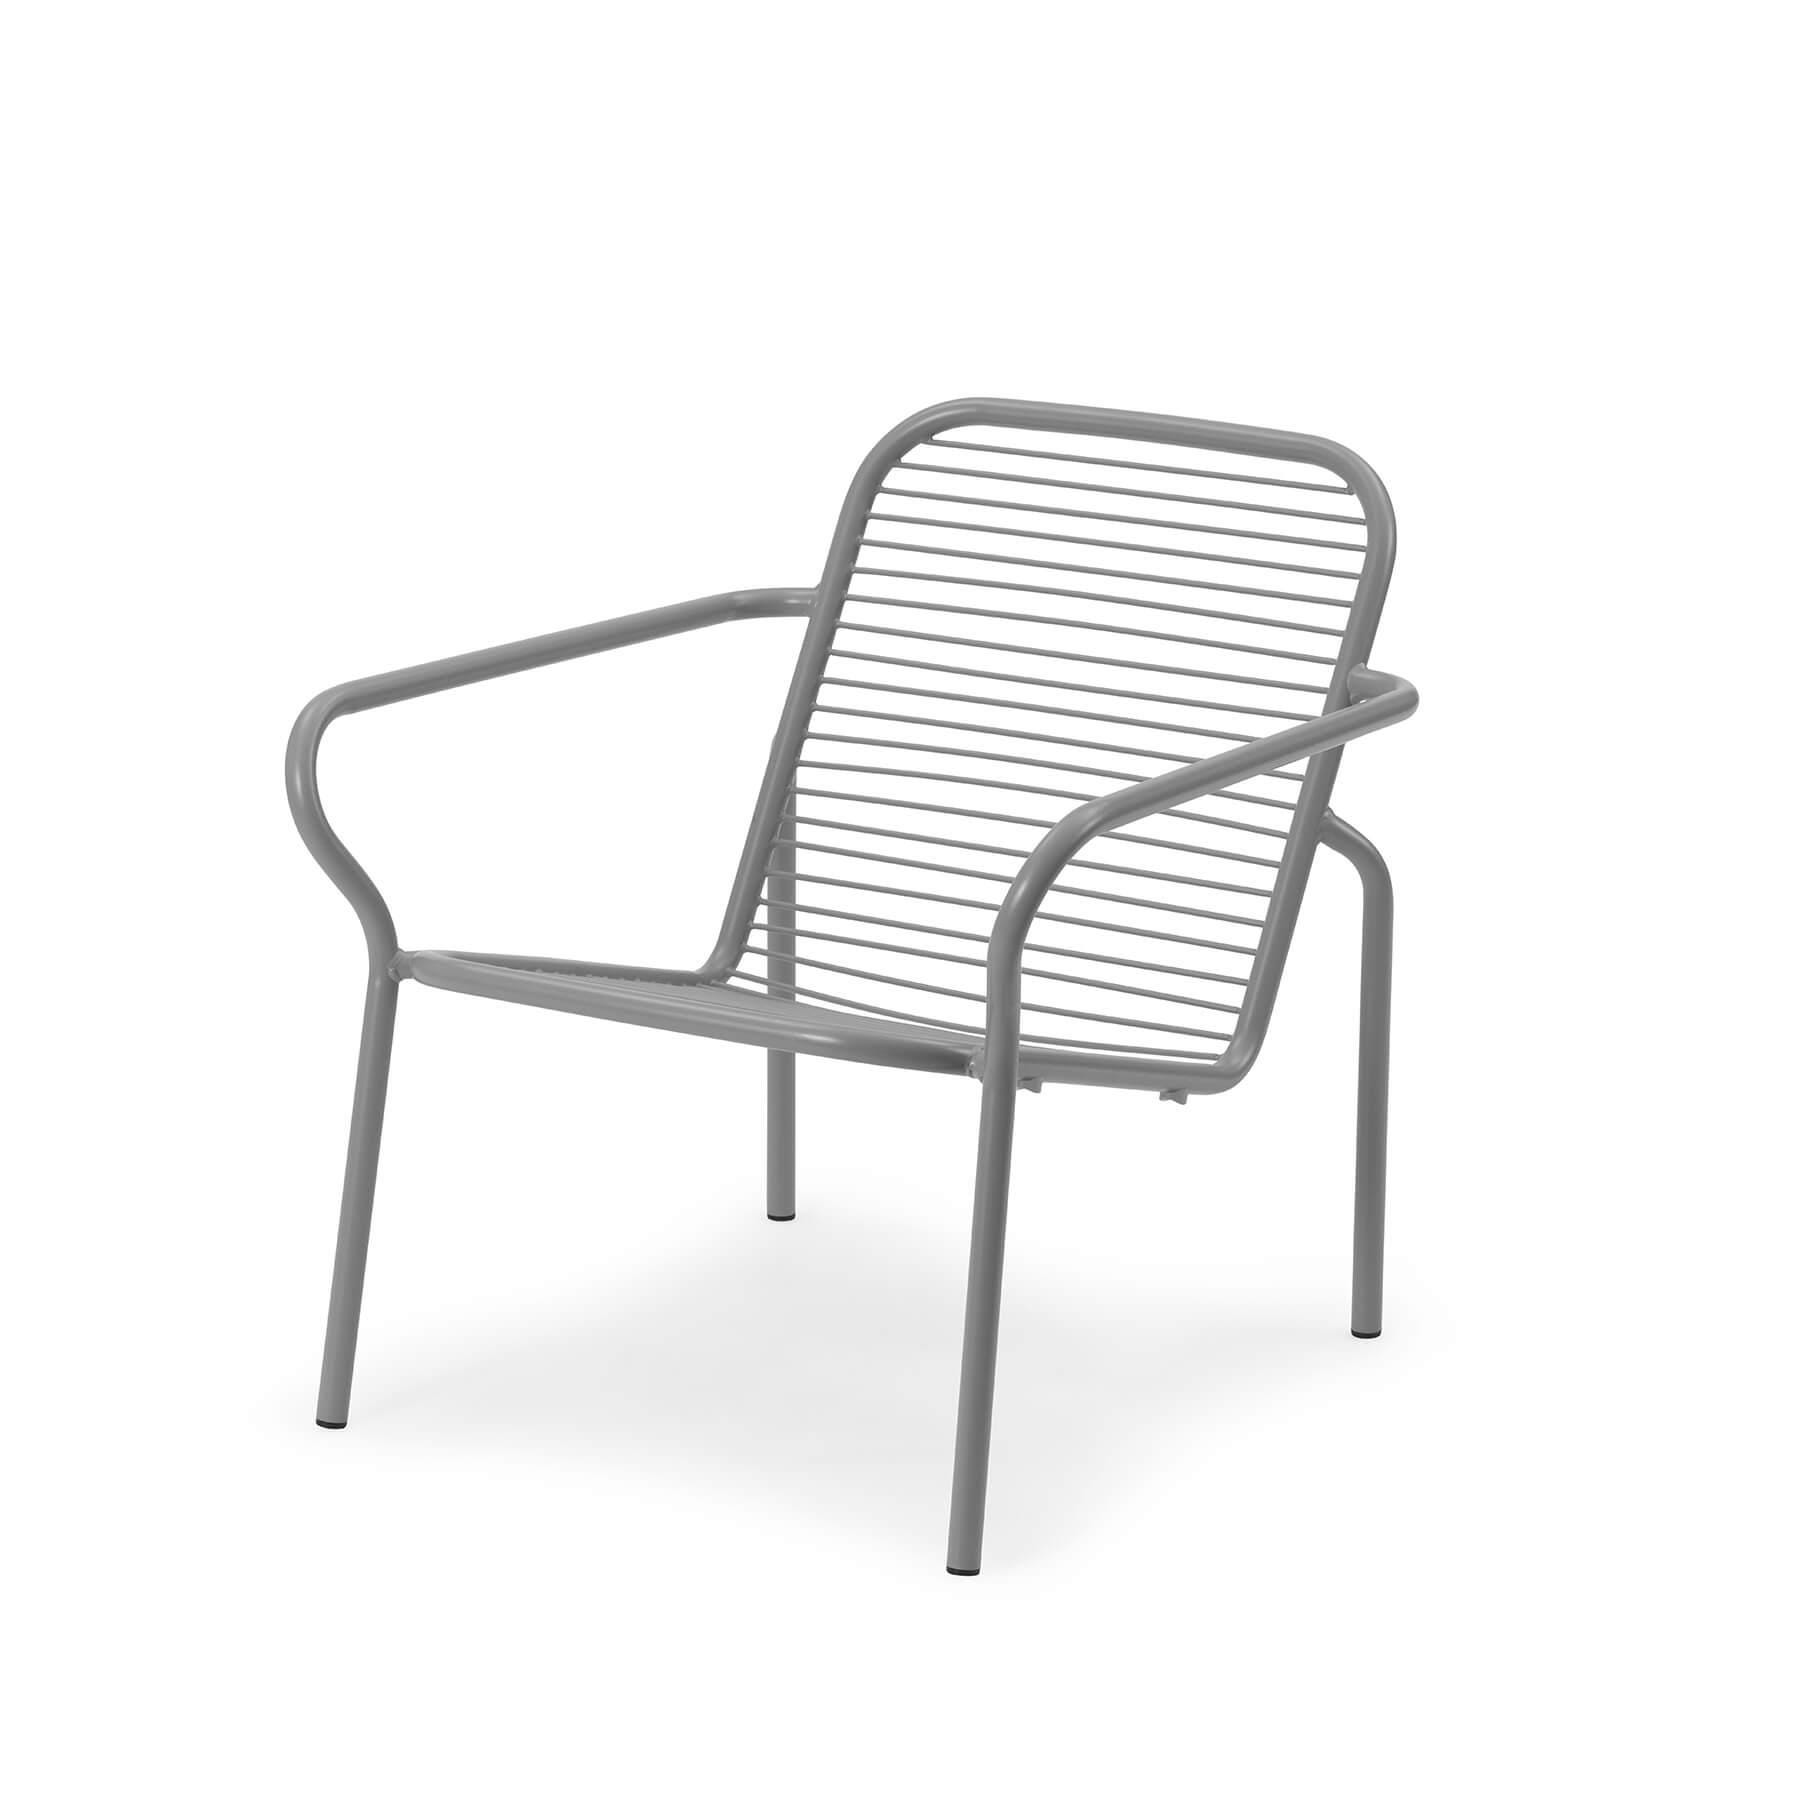 Normann Copenhagen Vig Garden Lounge Chair Grey Designer Furniture From Holloways Of Ludlow